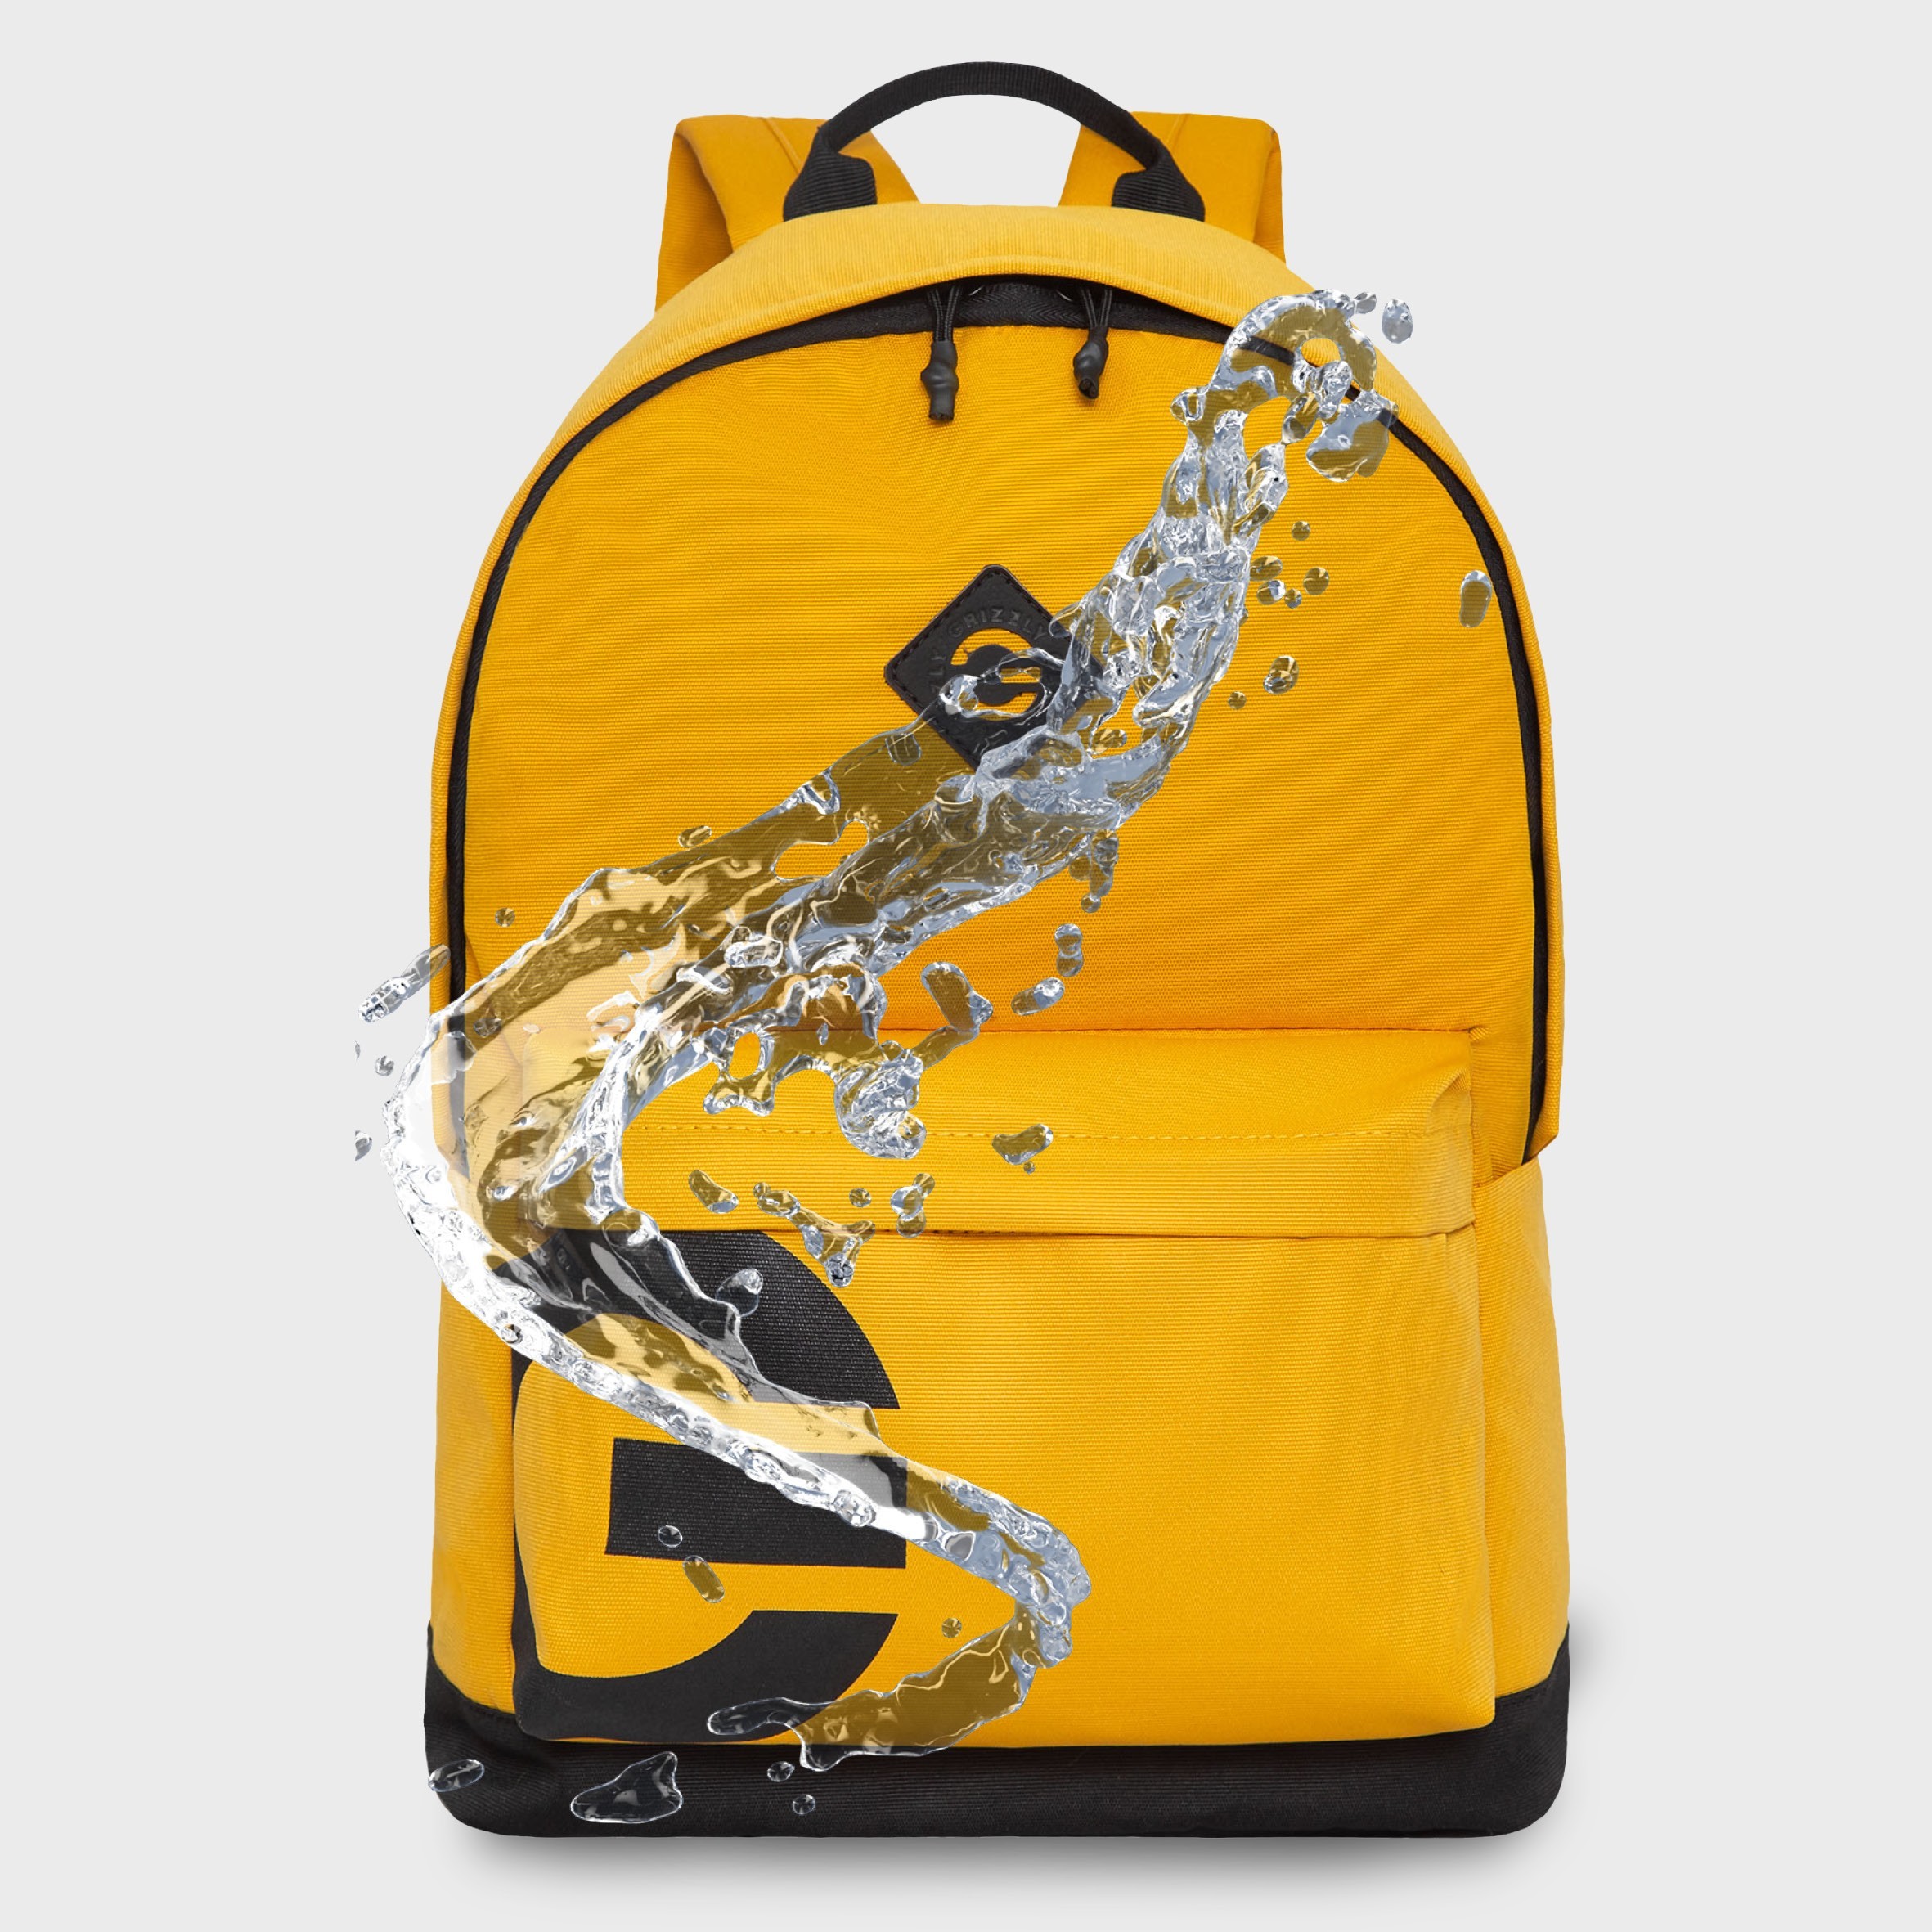 Водоотталкивающая пропитка — максимальная защита содержимого рюкзака